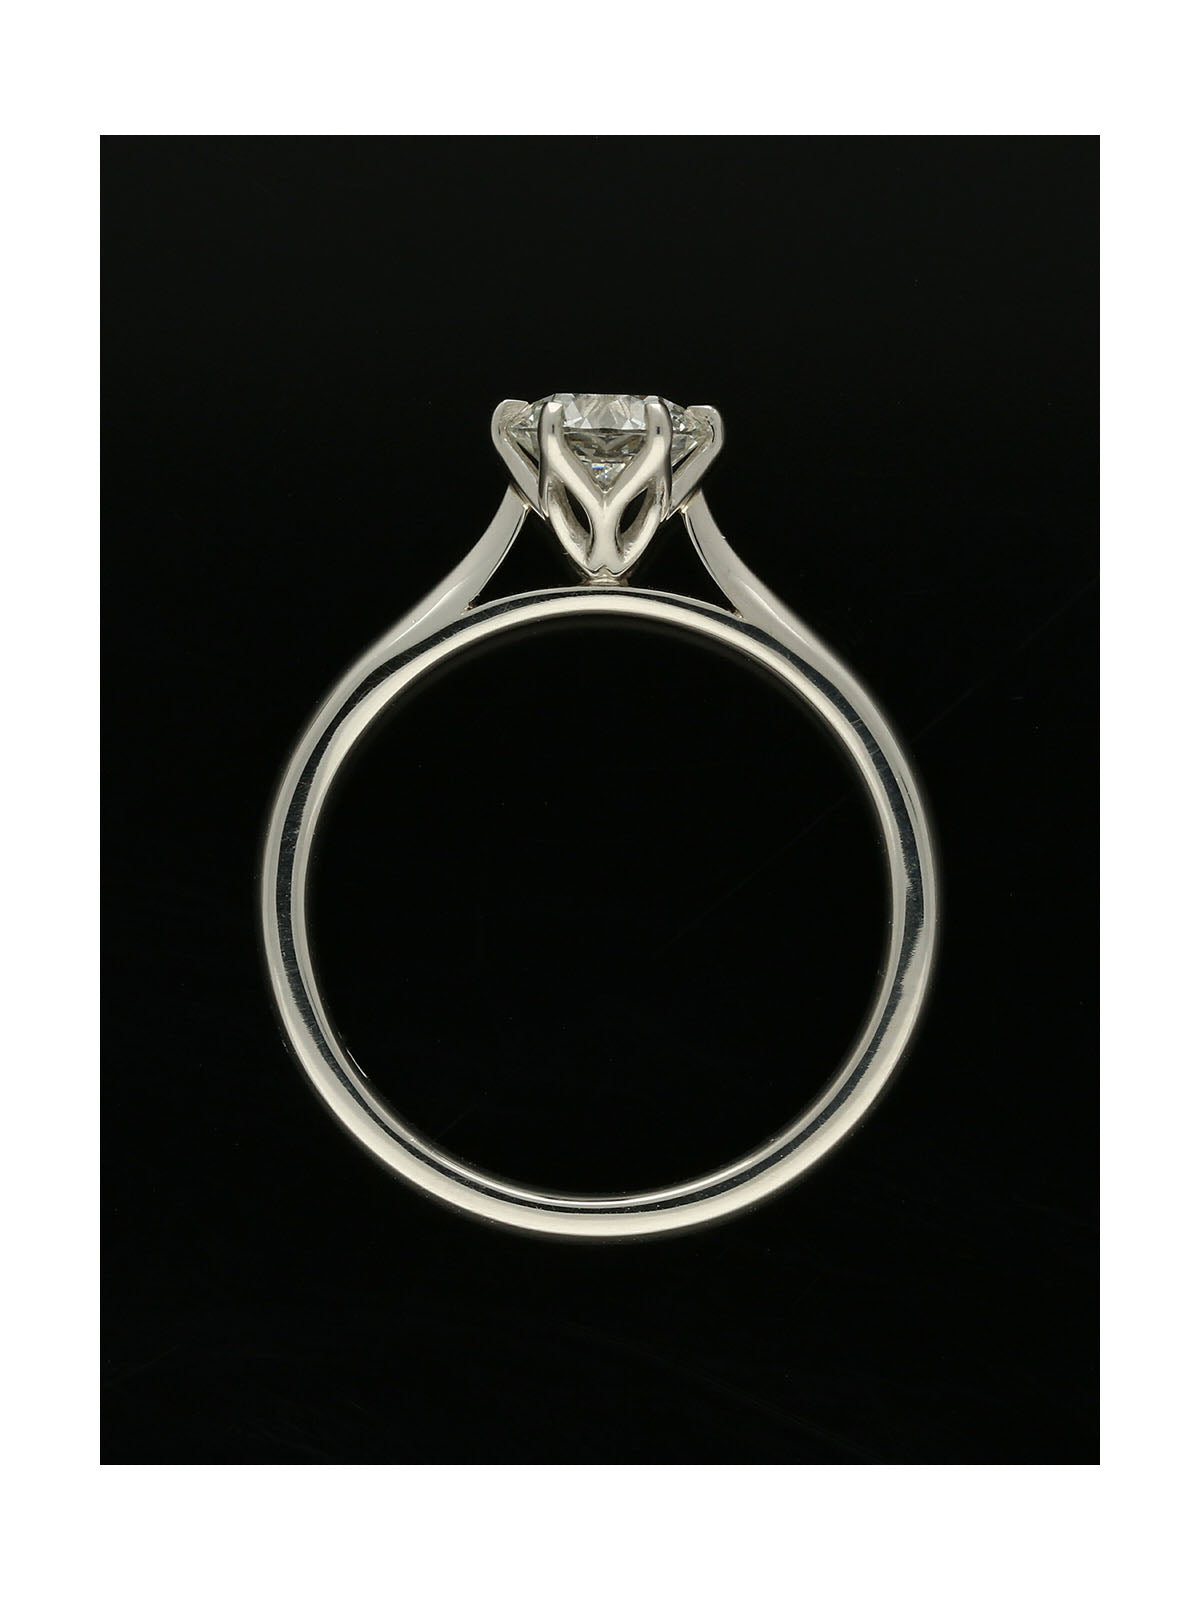 Diamond Solitaire Engagement Ring 0.76ct Certificated Round Brilliant Cut in Platinum